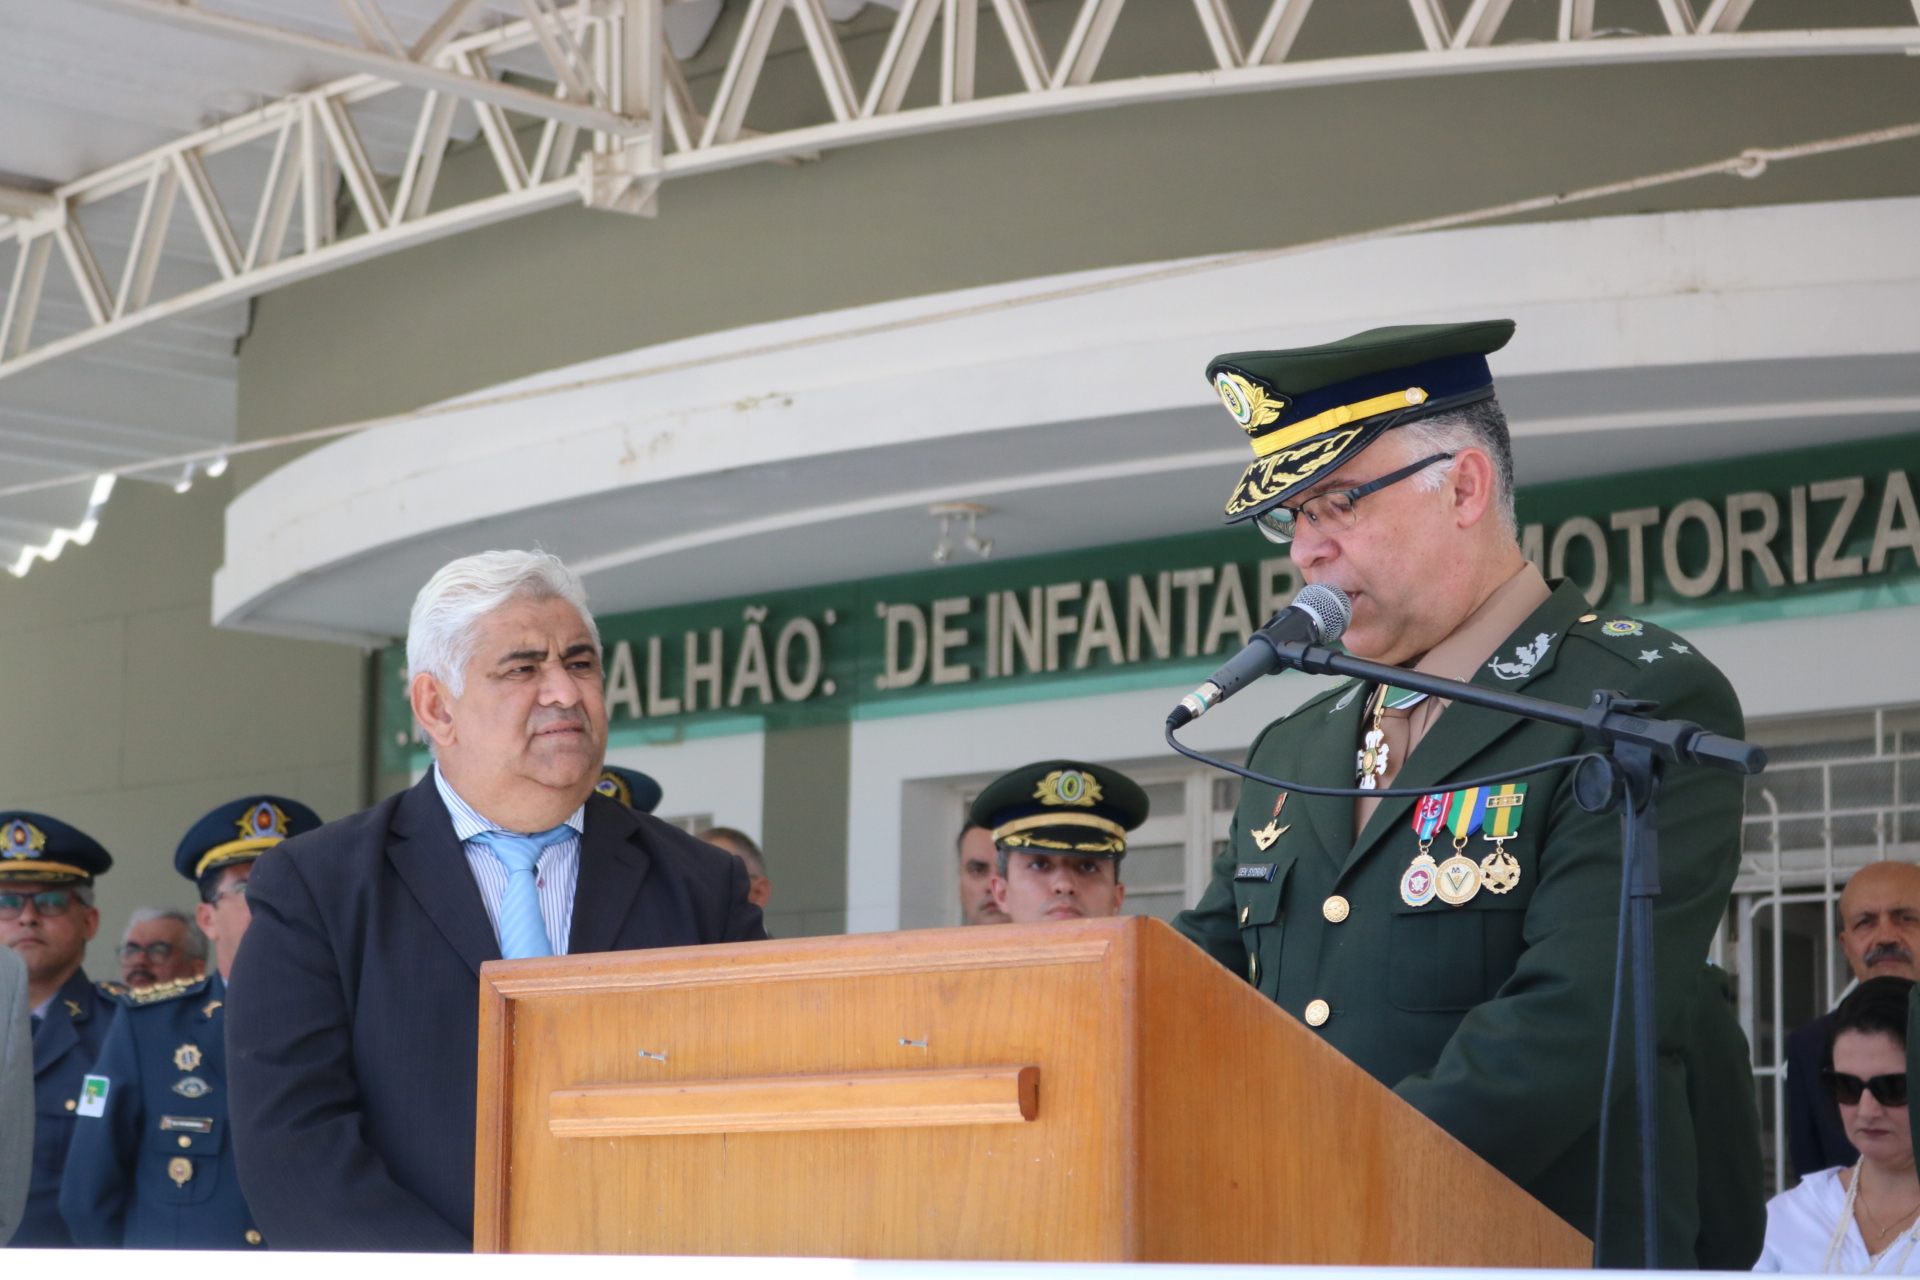 Dia do Exército Brasileiro — Câmara Municipal